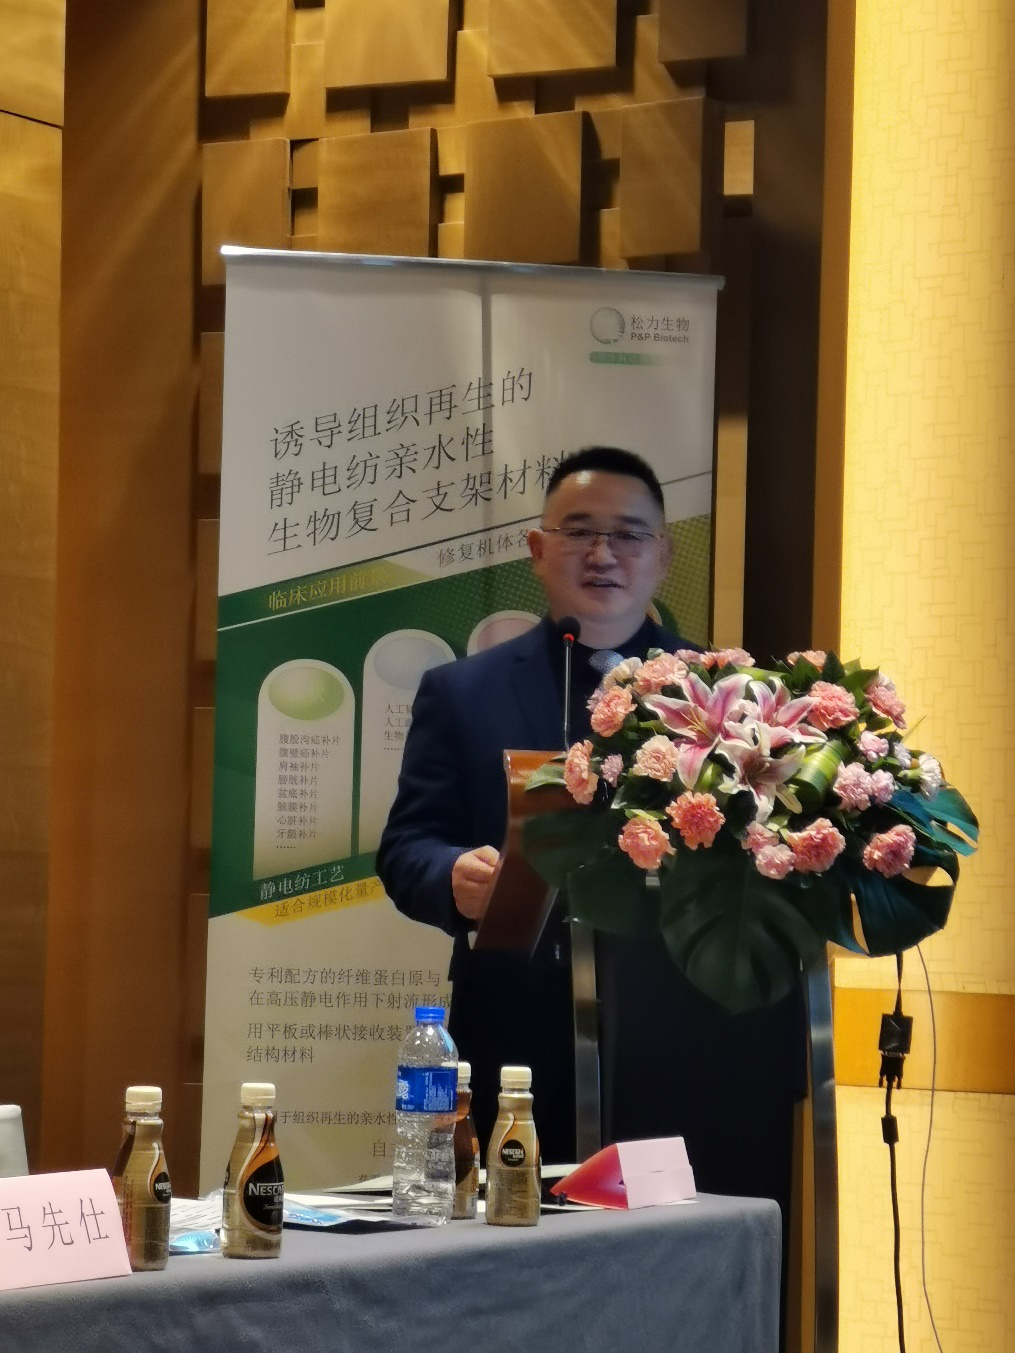 致敬抗疫英雄 疝与腹壁外科创新型生物材料高峰论坛于武汉召开